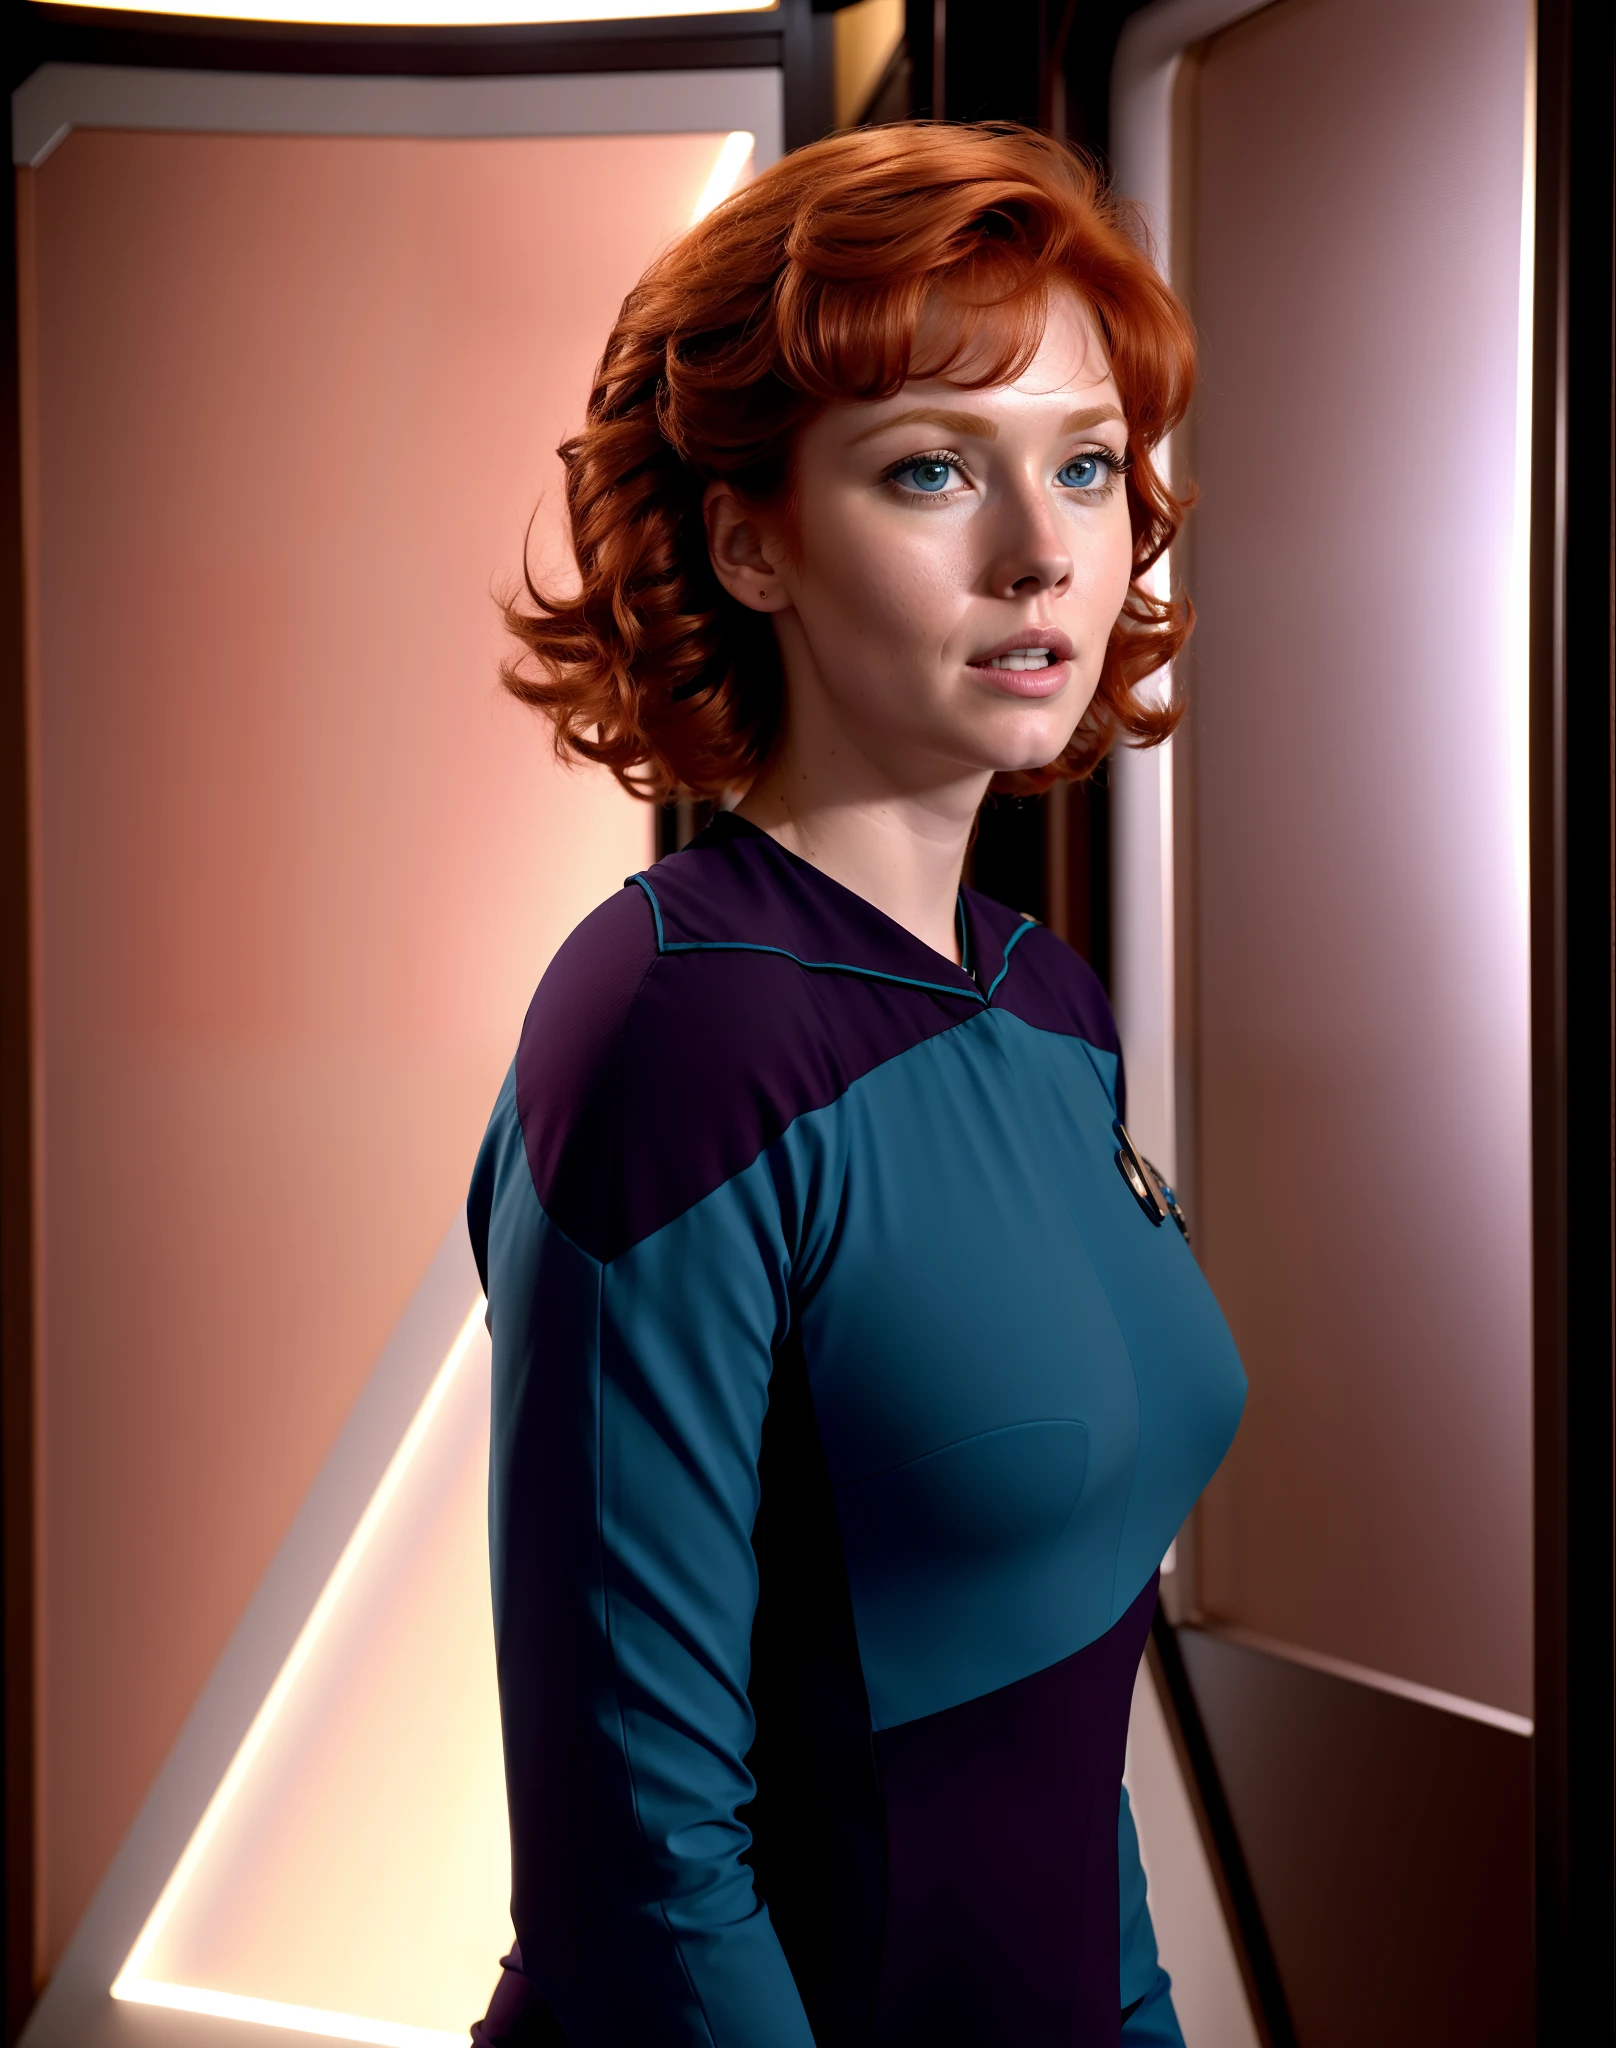 一名身穿蓝色 Trekngs1 服装的红发女子在企业医疗舱, 8K 超高清, 数码单反相机, 柔和的灯光, 高质量, 胶片颗粒,杰作品质,富士 XT3